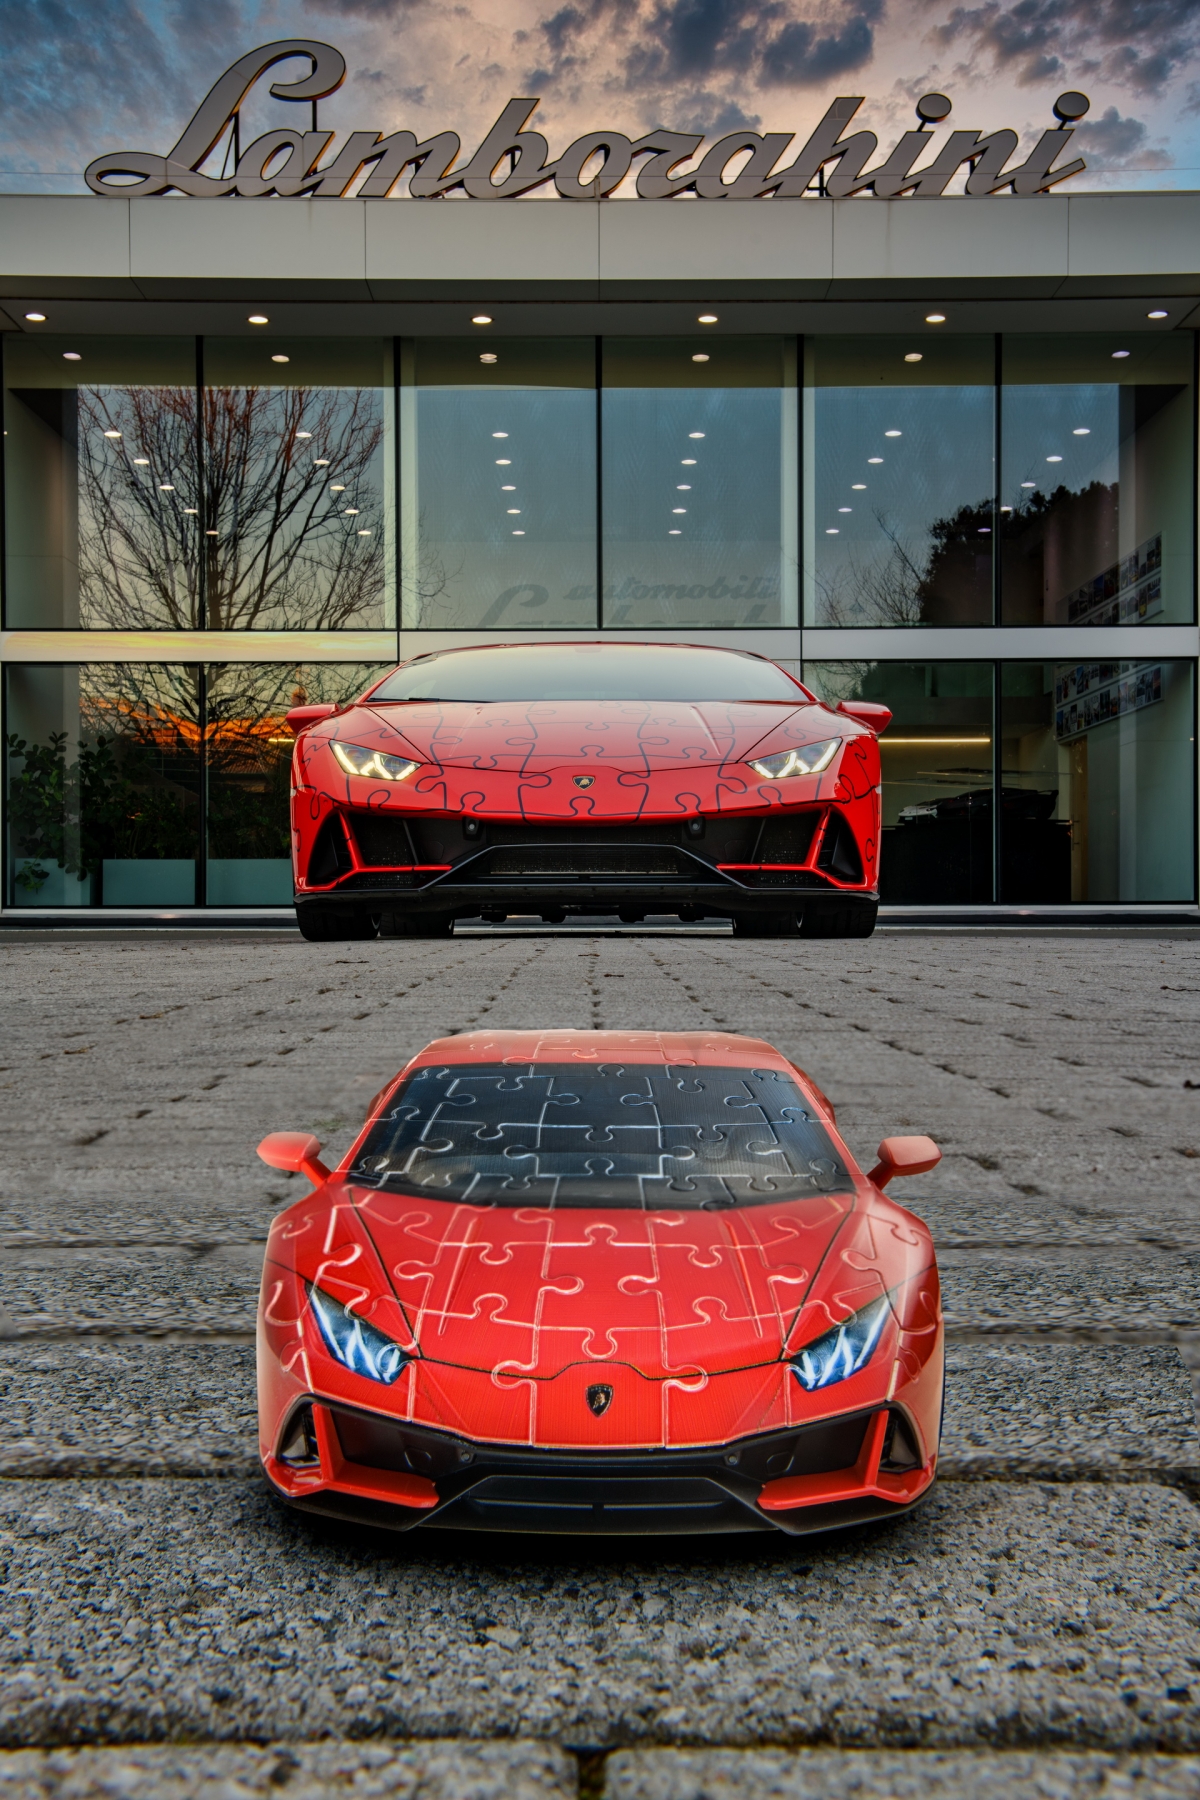 Xếp hình 3D Lamborghini Huracan EVO cực kỳ thú vị và thử thách sự khéo léo, tập trung của bạn. Với độ chi tiết cực cao, bạn sẽ không khỏi ngạc nhiên trước sự khéo léo của mô hình xe. Hãy thử sức và khám phá bí mật của siêu xe Lamborghini Huracan EVO cùng trò chơi xếp hình 3D này.